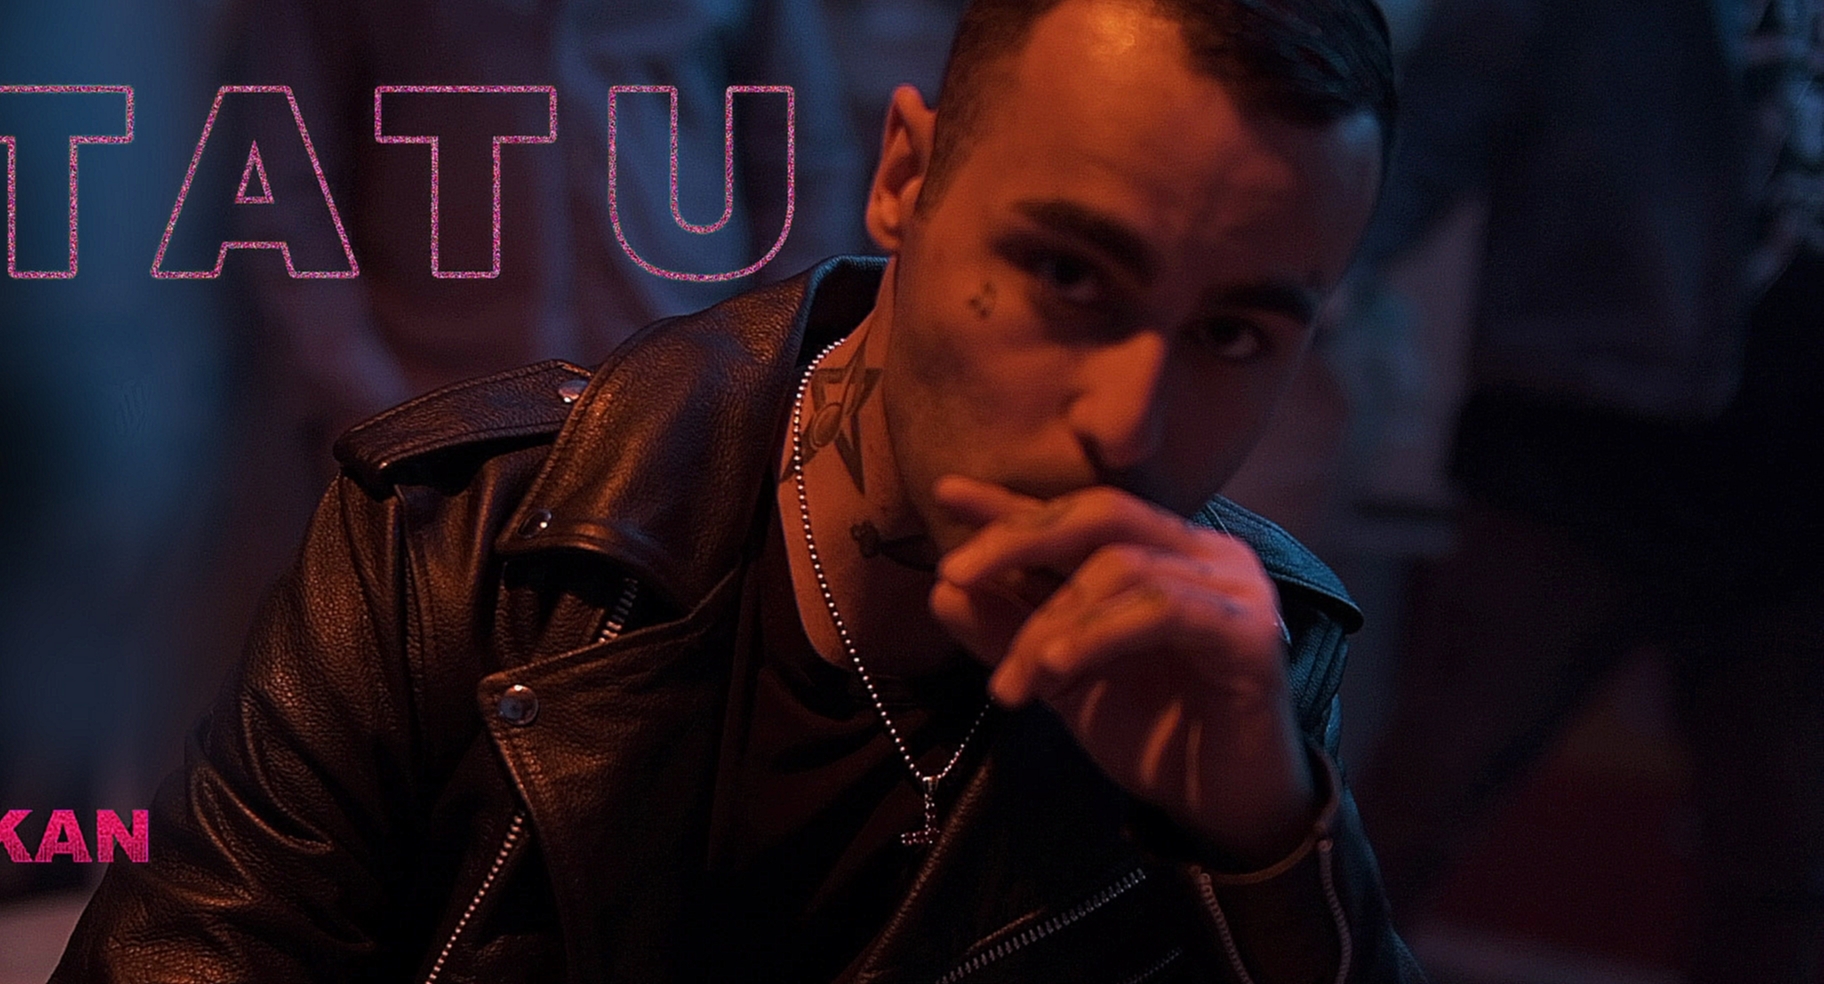 KAN – Tatu премьера клипа, 2018 